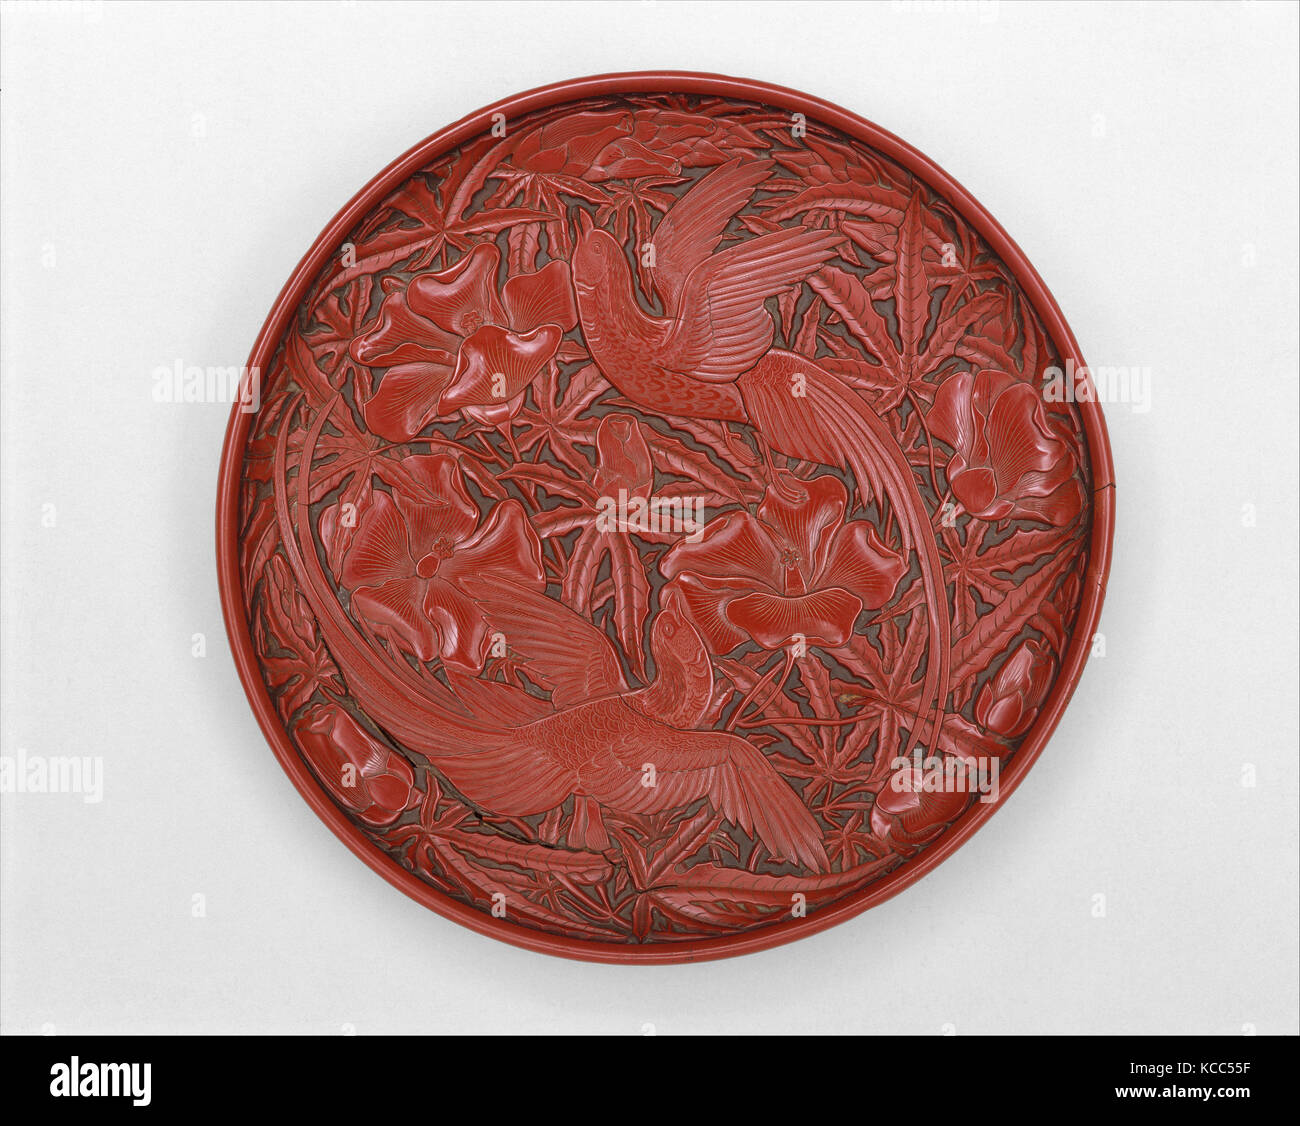 元 剔紅綬帶秋葵紋漆盤, Dish with long-tailed birds and hollyhock, 14th century Stock Photo